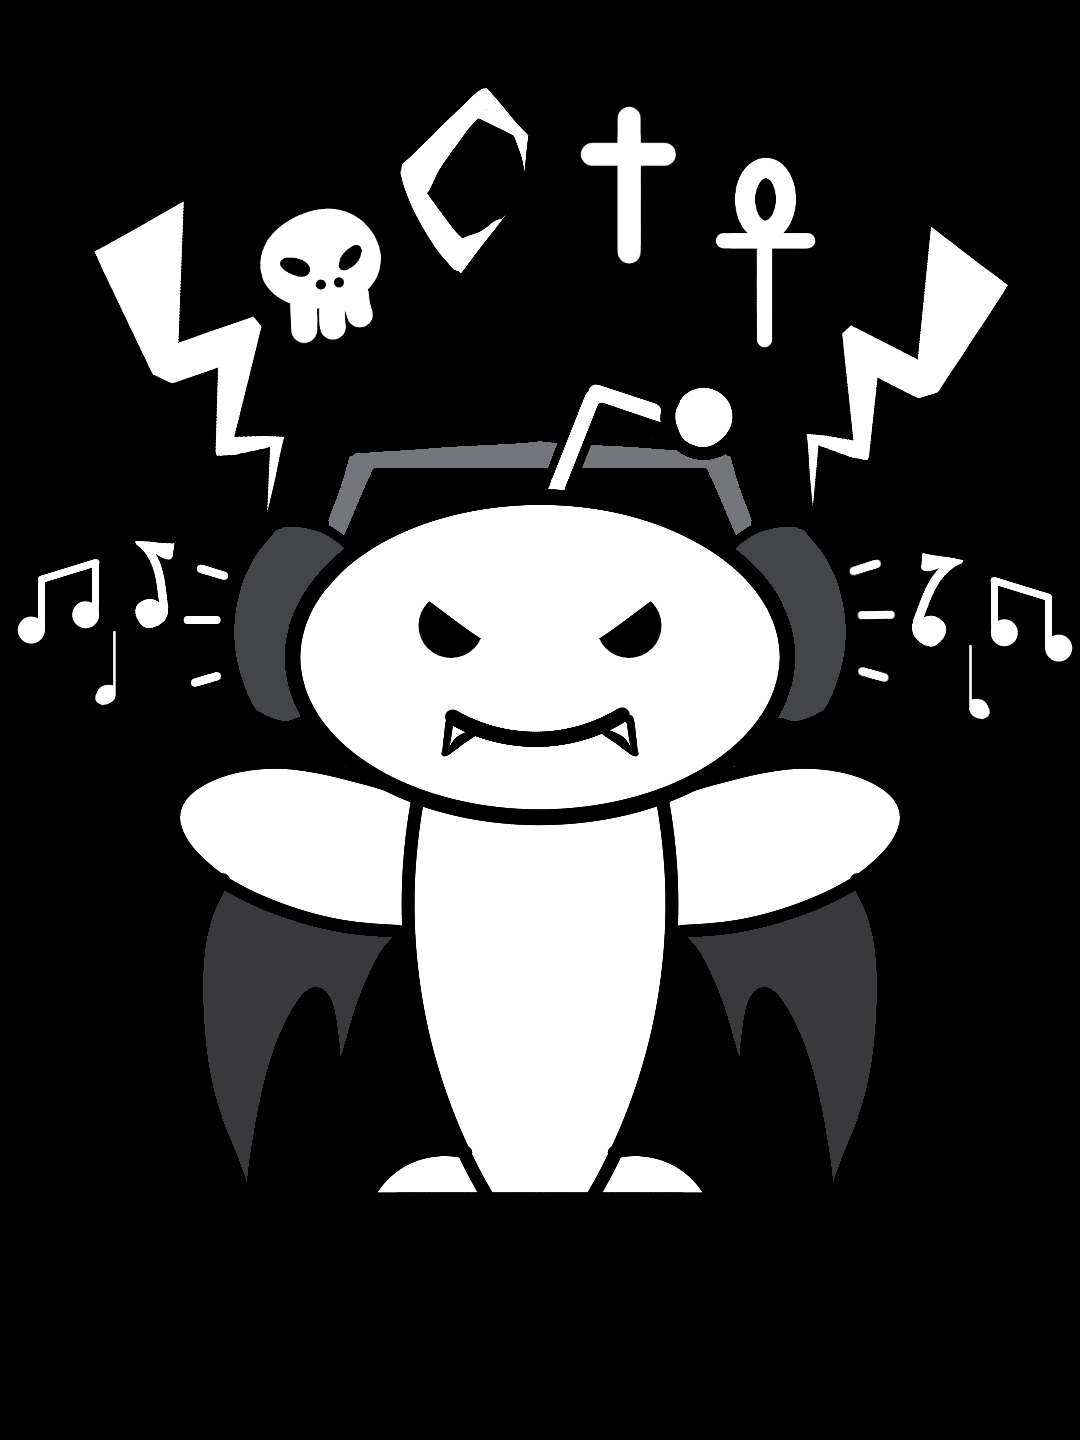 Goth Logo - I made a goth reddit logo